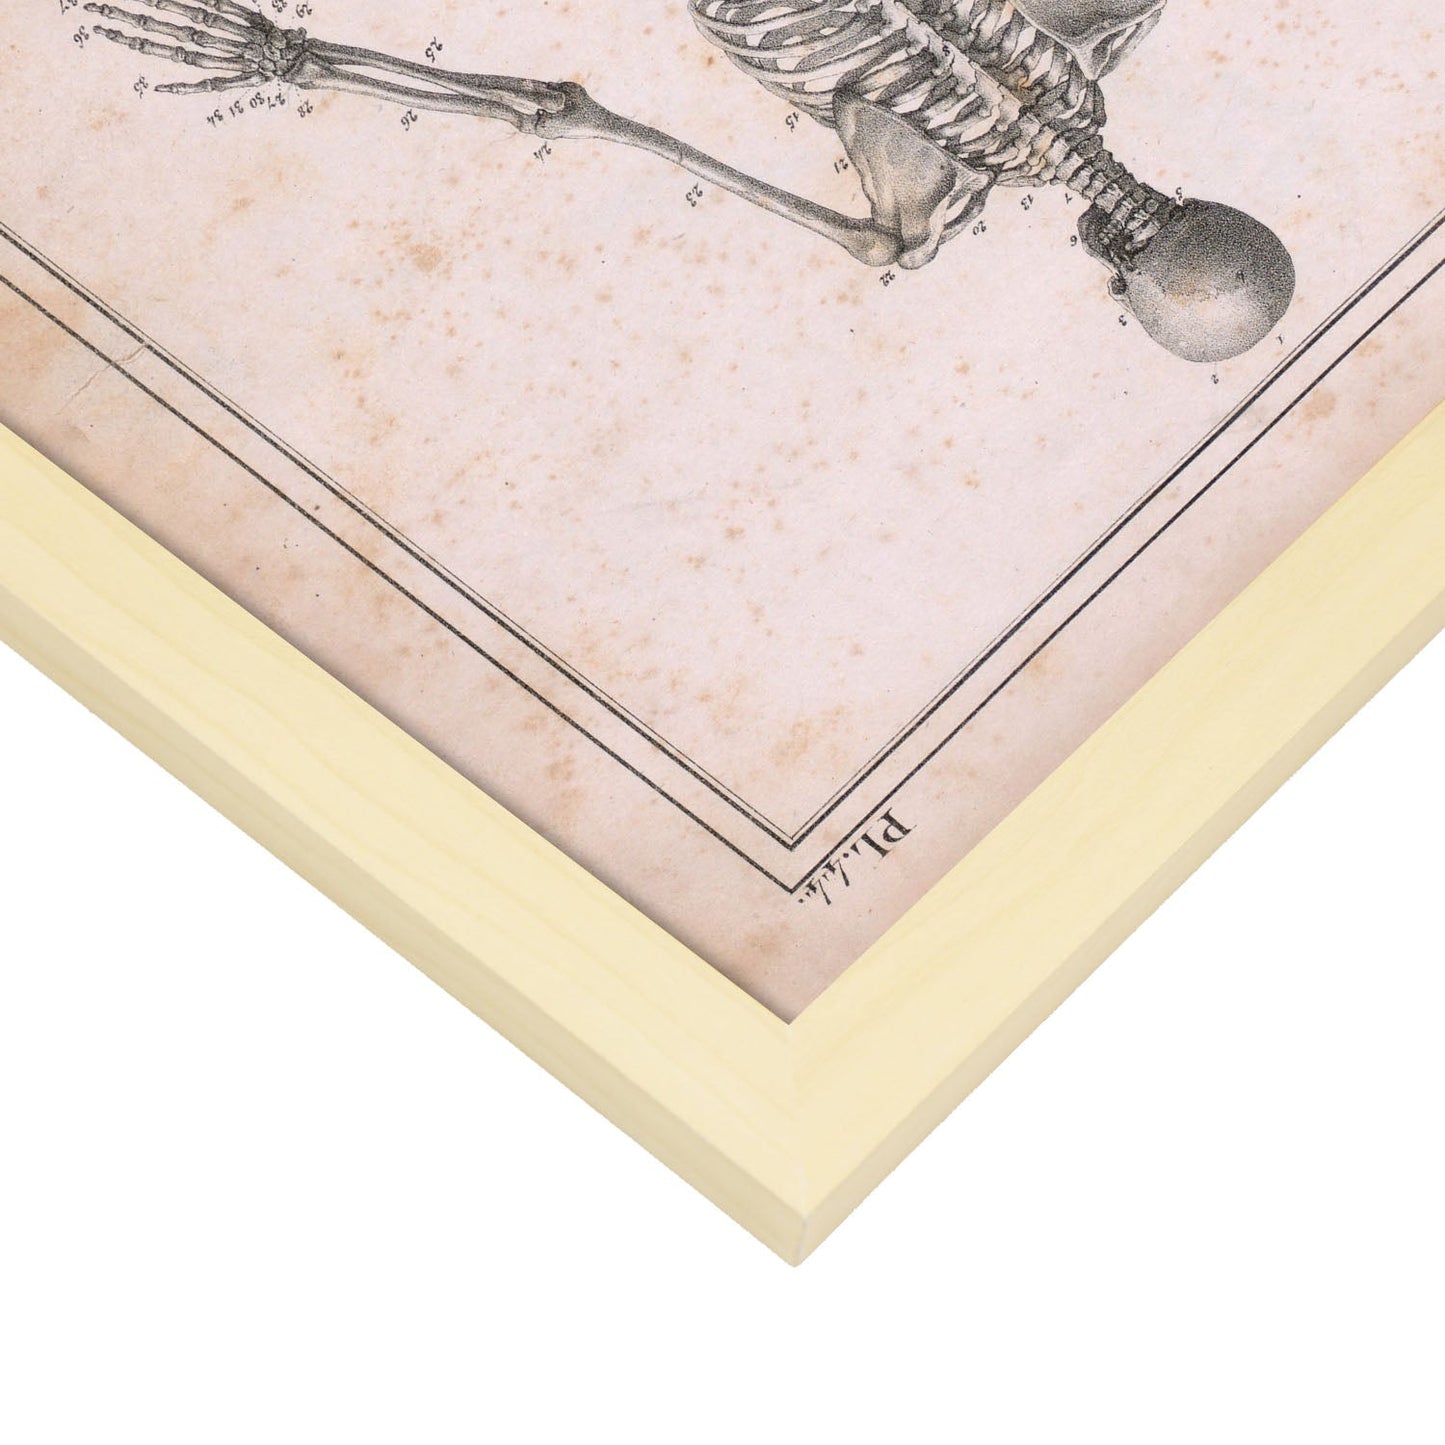 Paillou Skeleton-Artwork-Nacnic-Nacnic Estudio SL